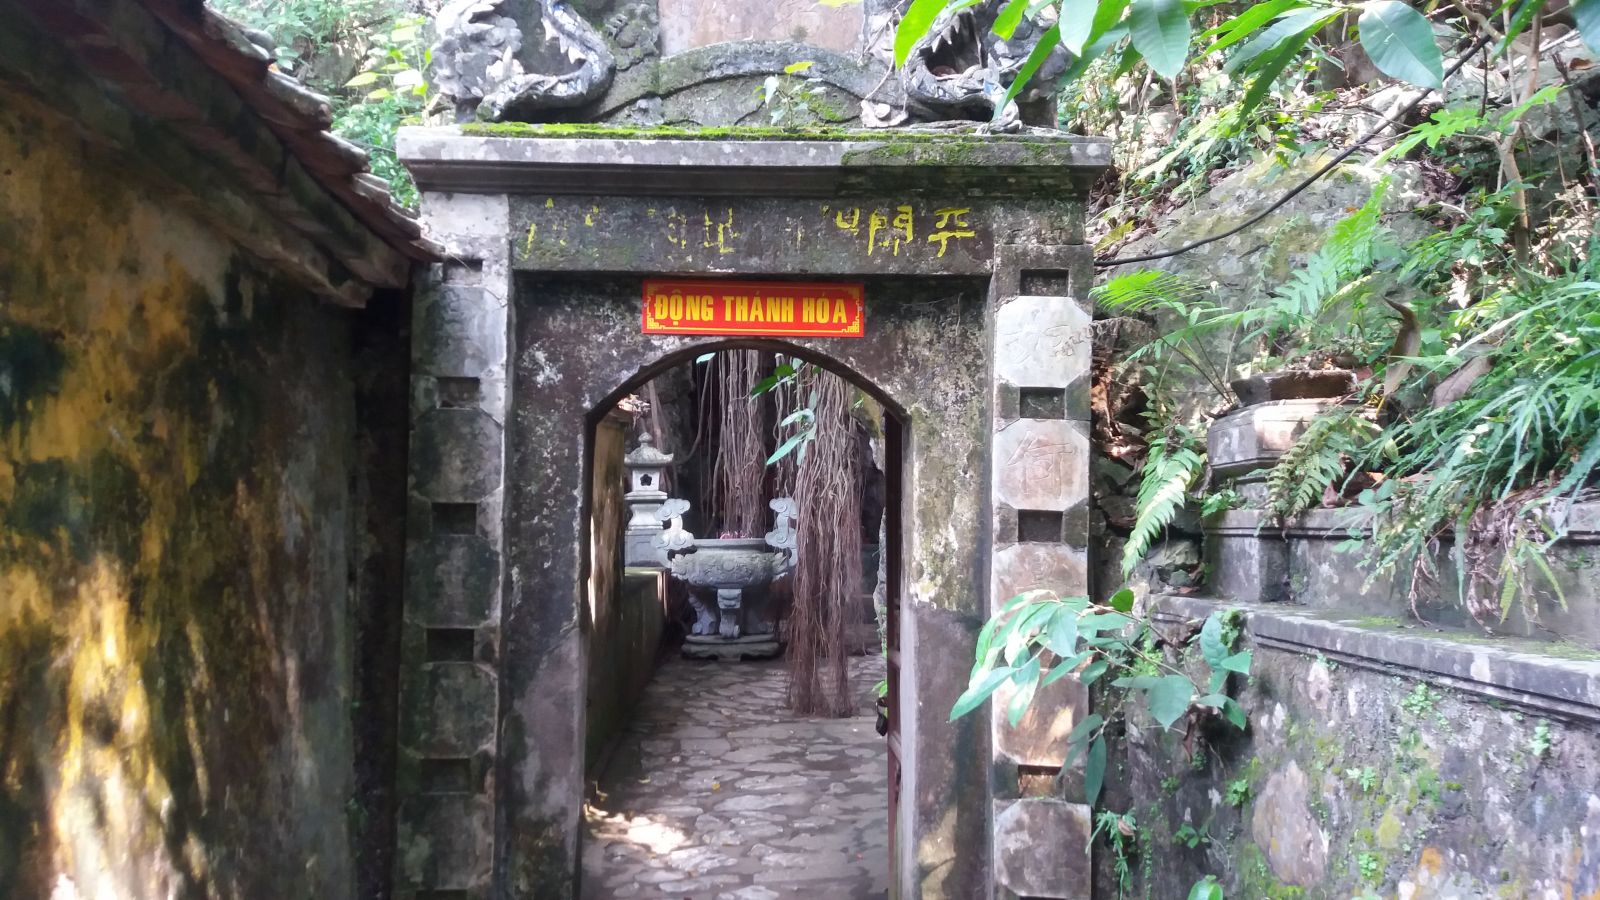 Thay pagoda-Thanh Hoa cave